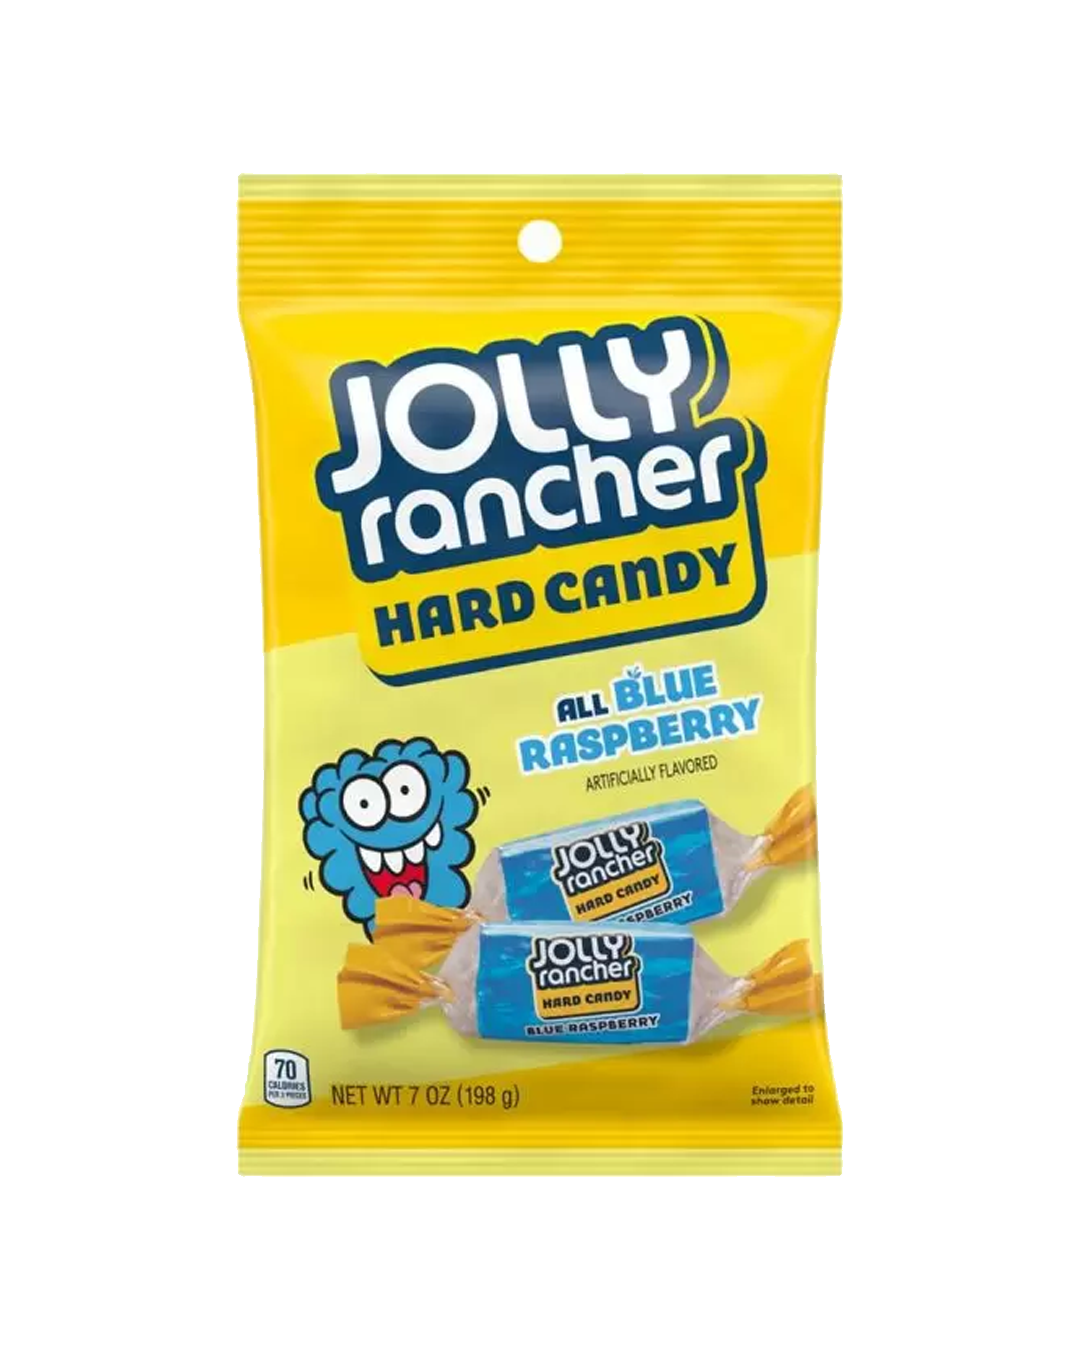 Jolly_Rancher_All_blue_raspberry_198g